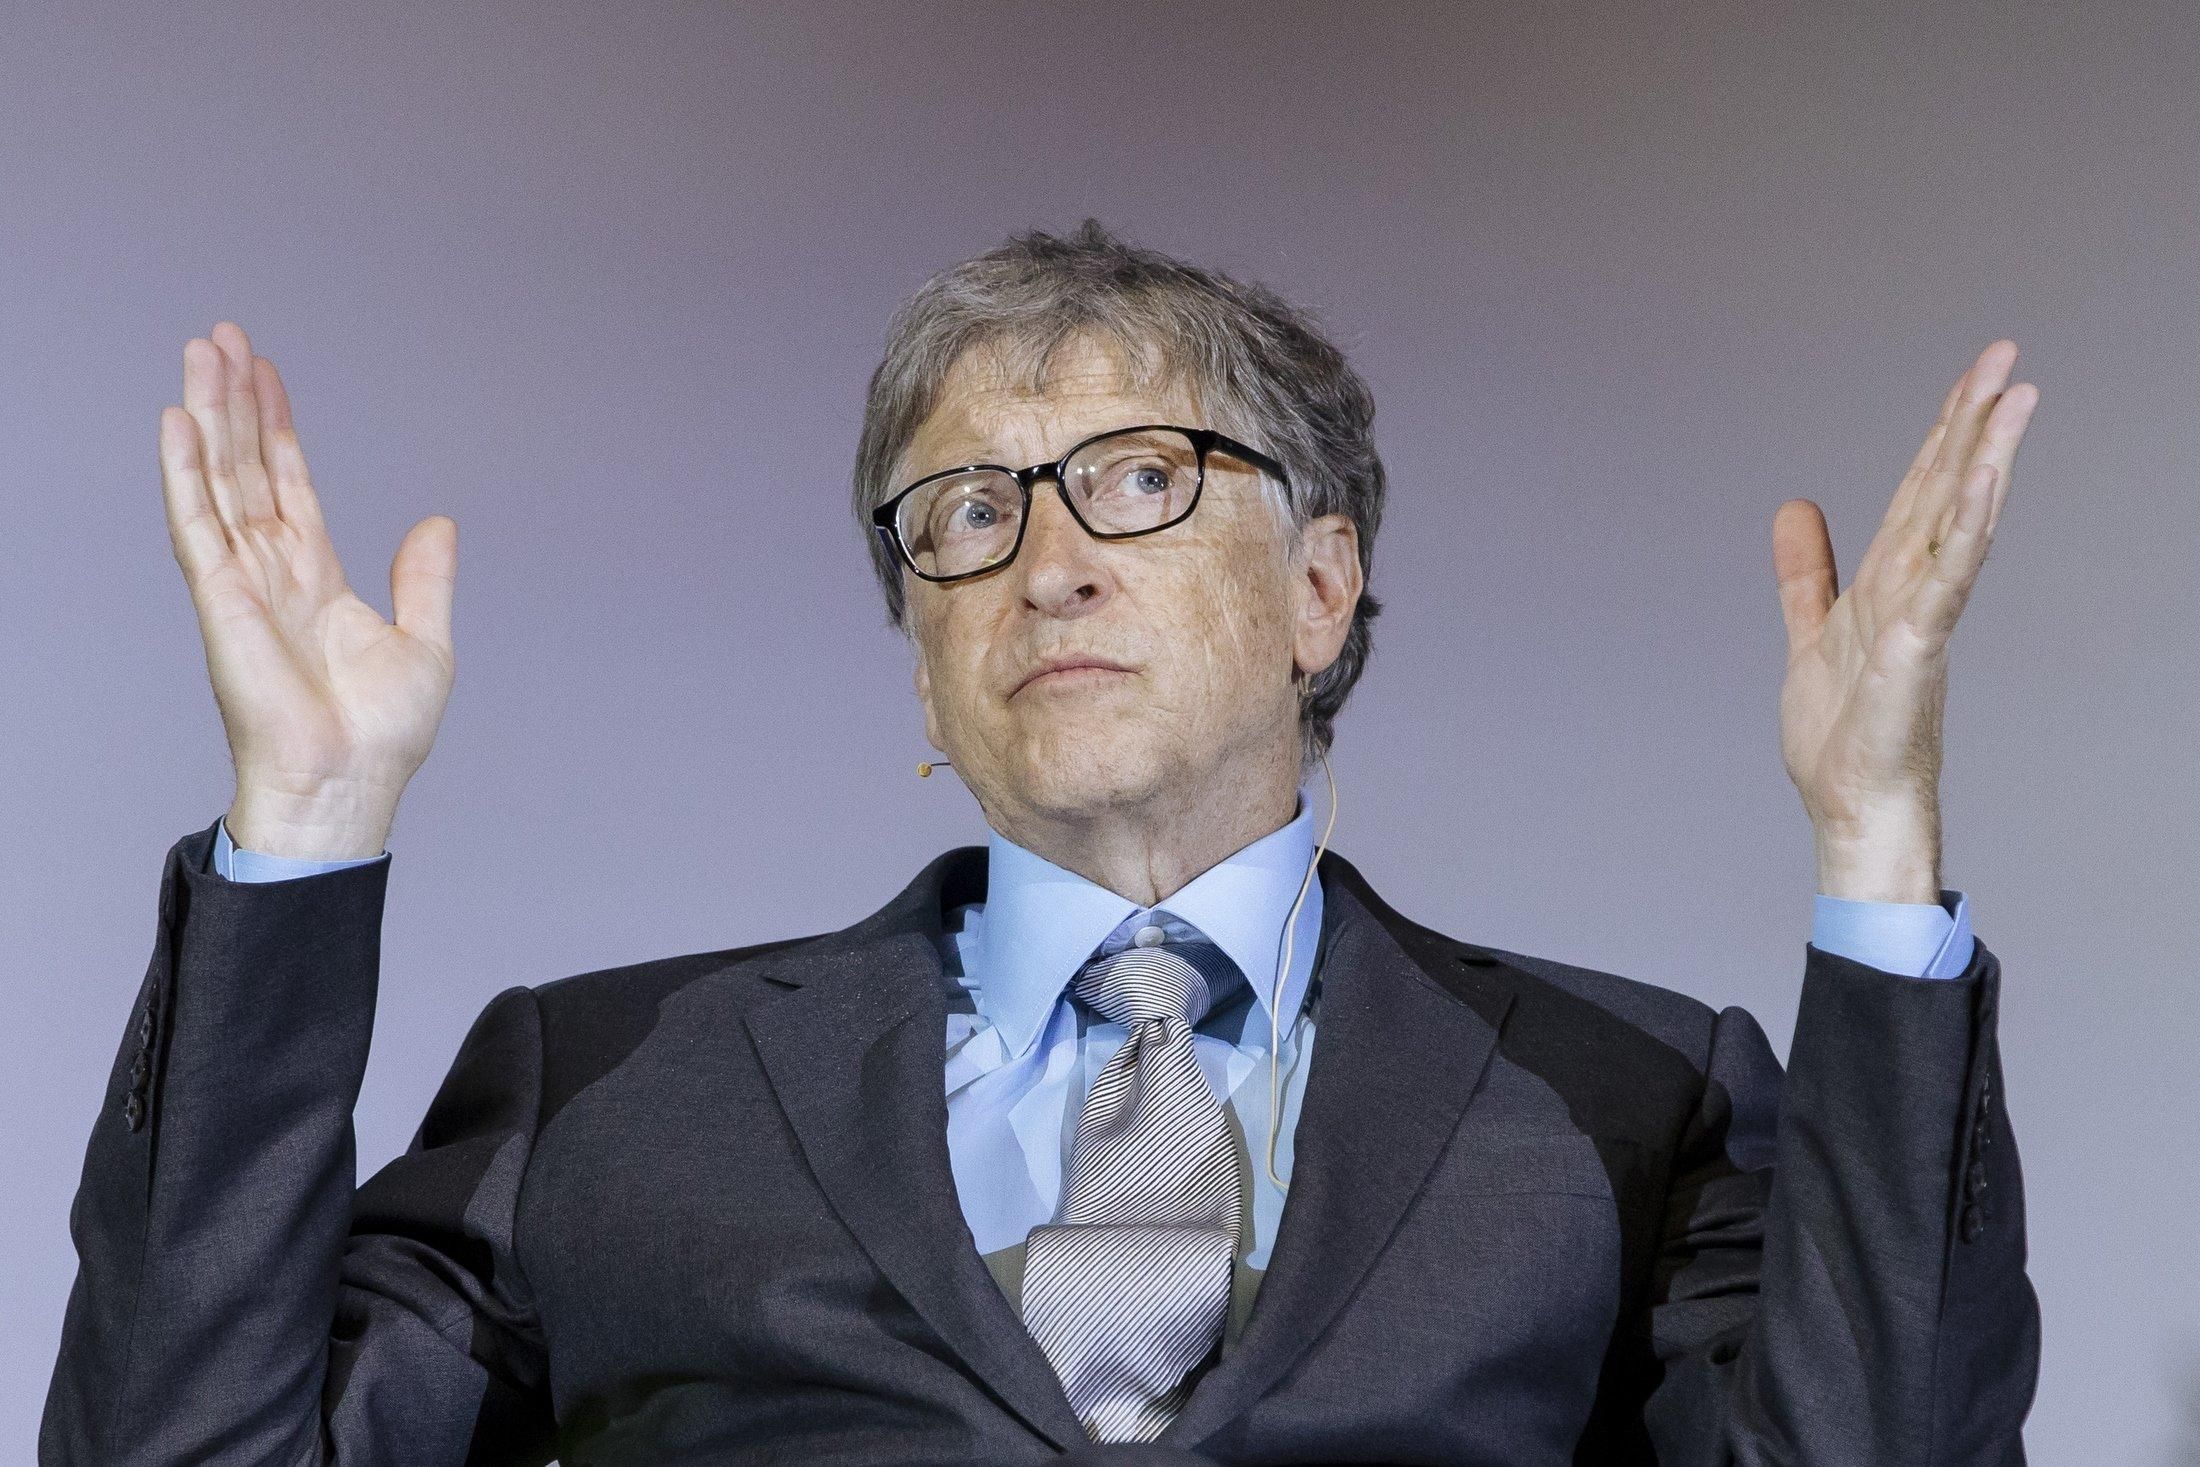 Білл Гейтс був офісним хуліганом: нові деталі його поведінки